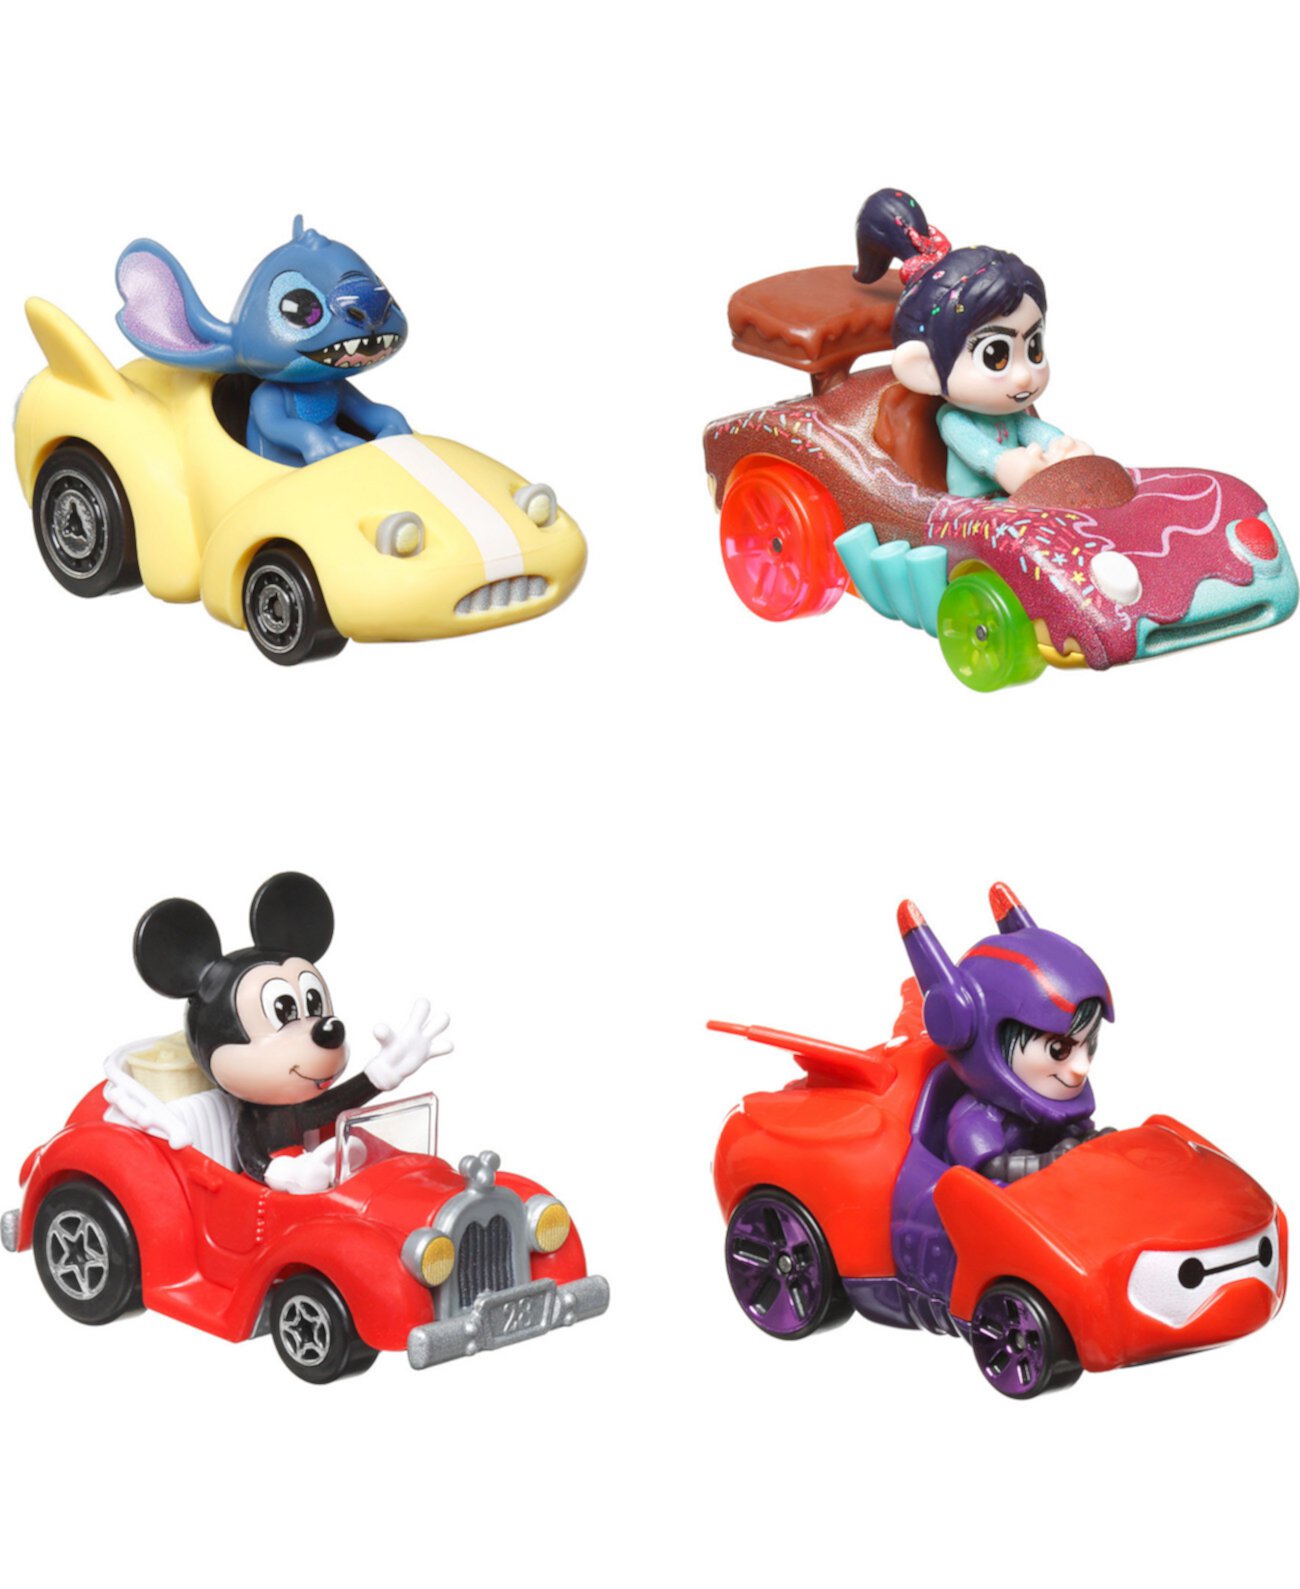 Набор Racerverse из 4 литых машинок Hot Wheels с персонажами поп-культуры в качестве водителей Hot Wheels